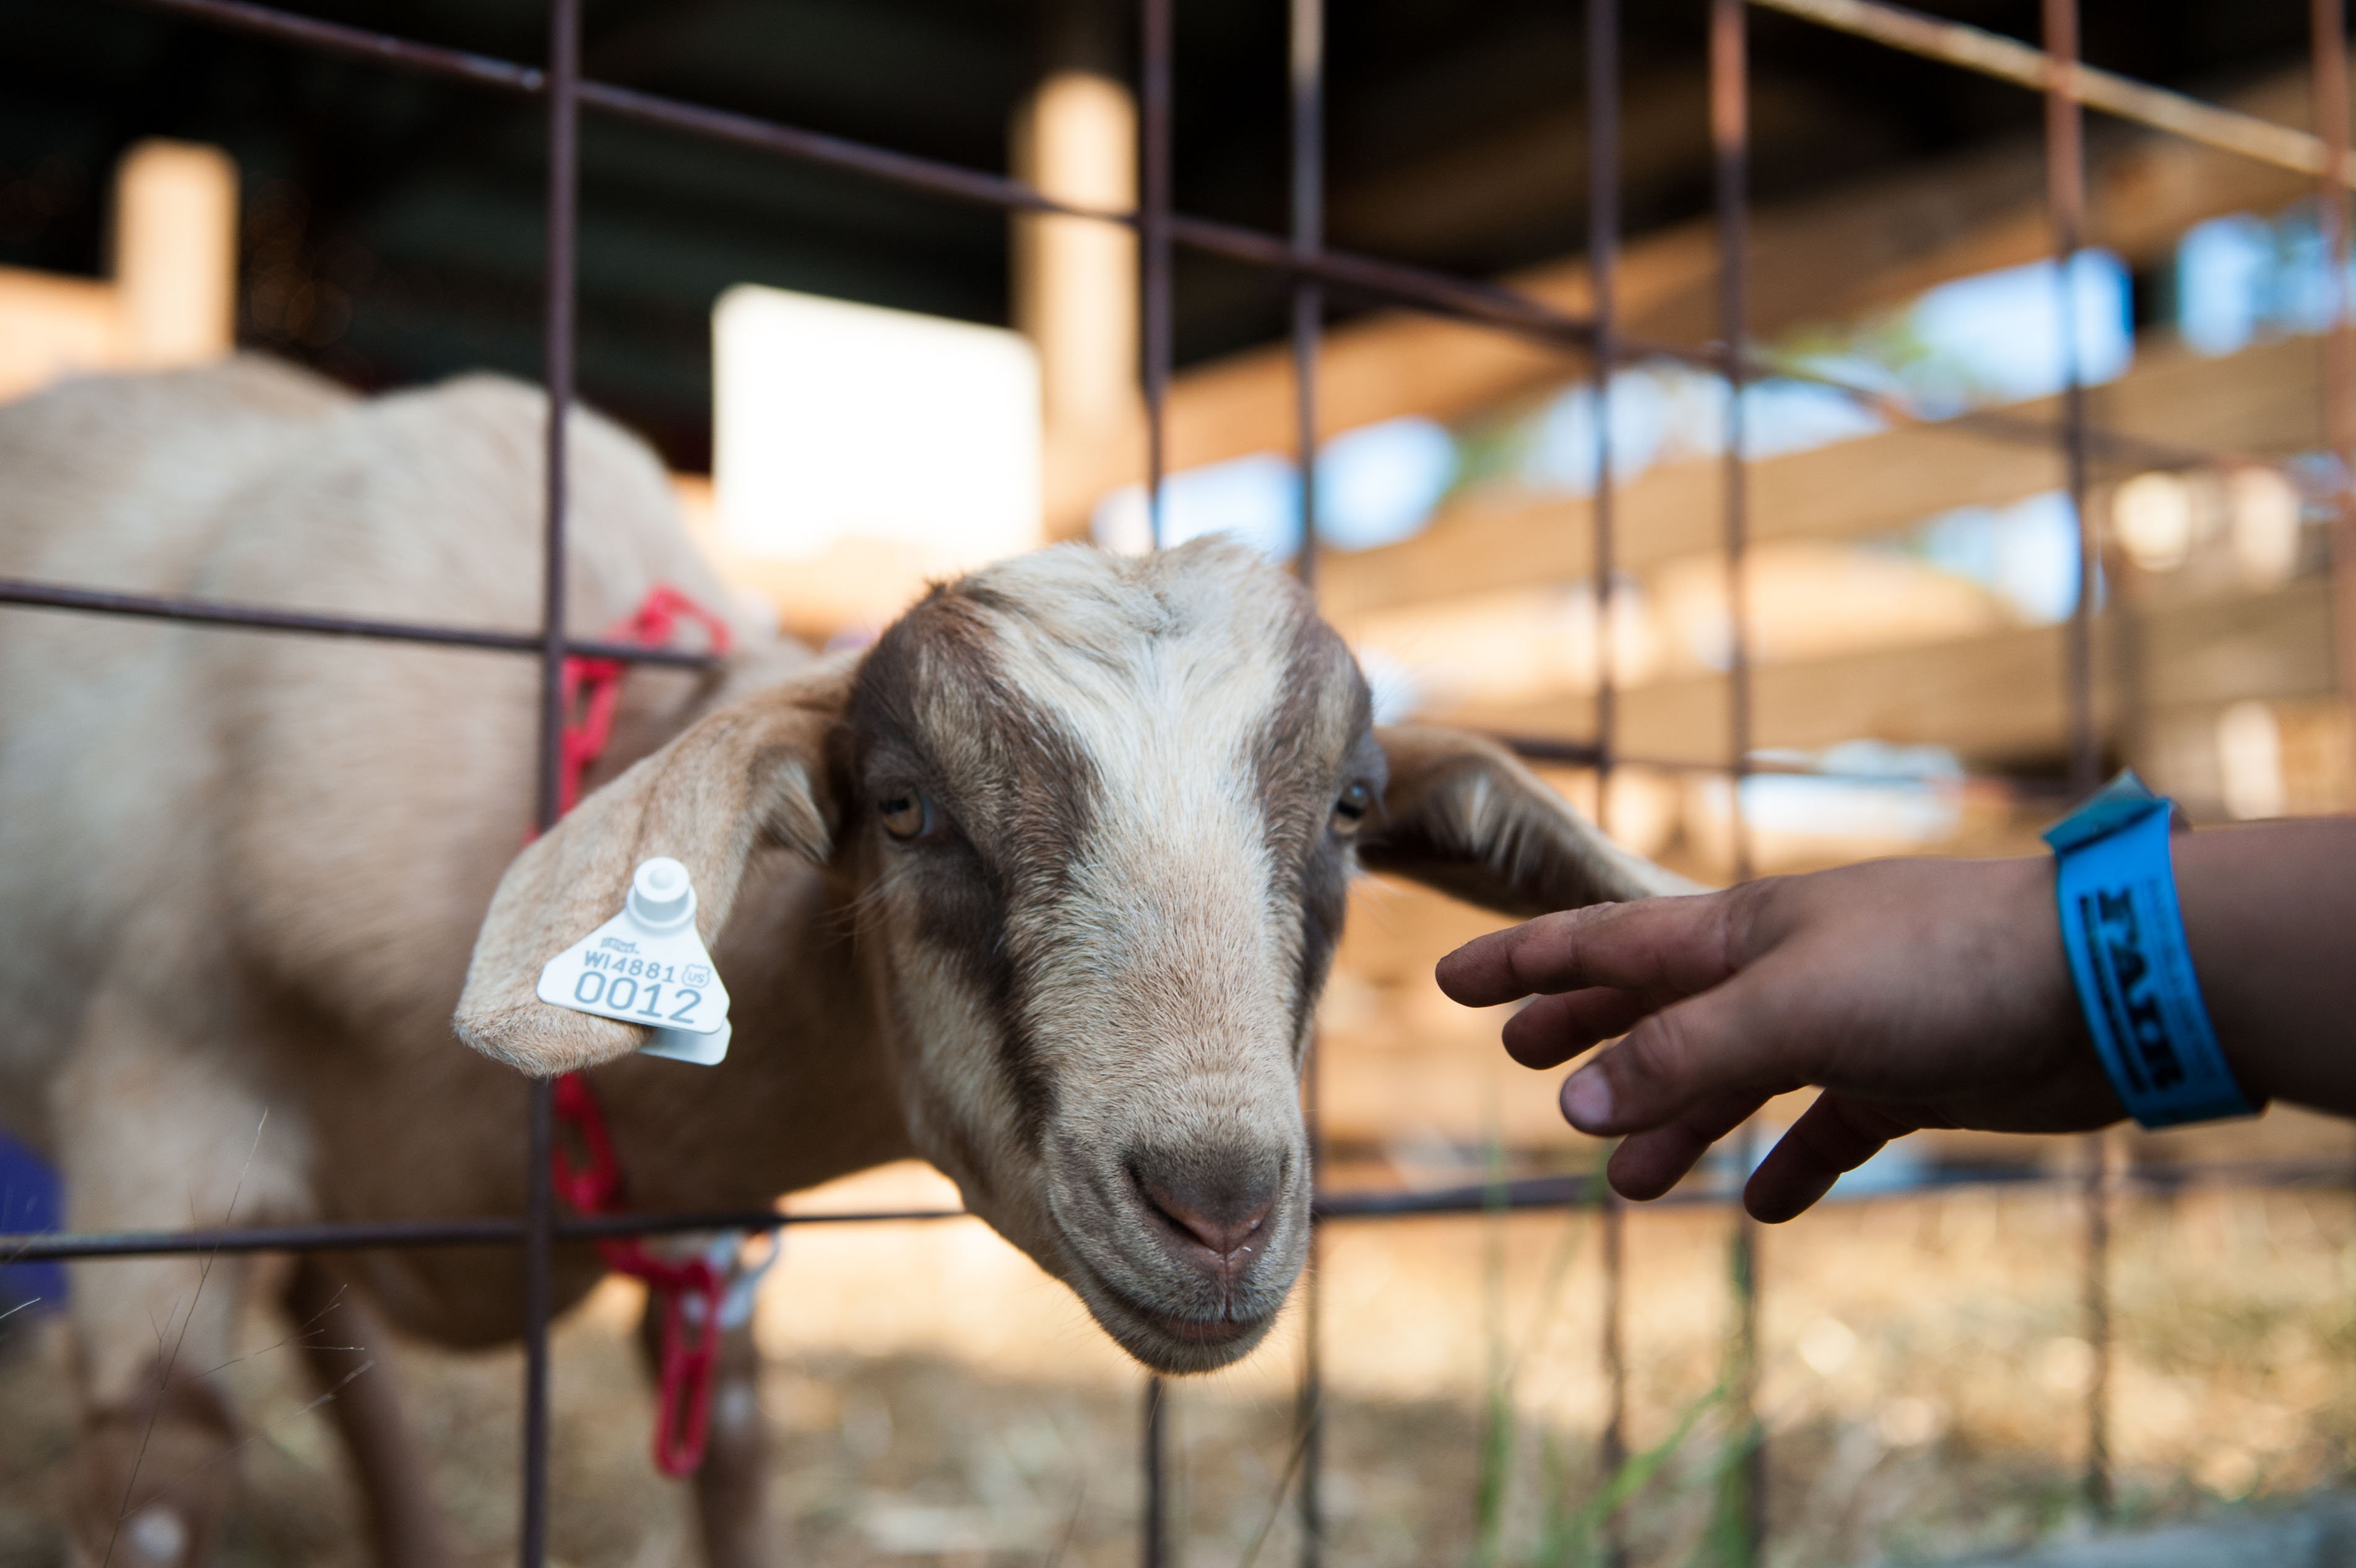 A goat at a local county fair